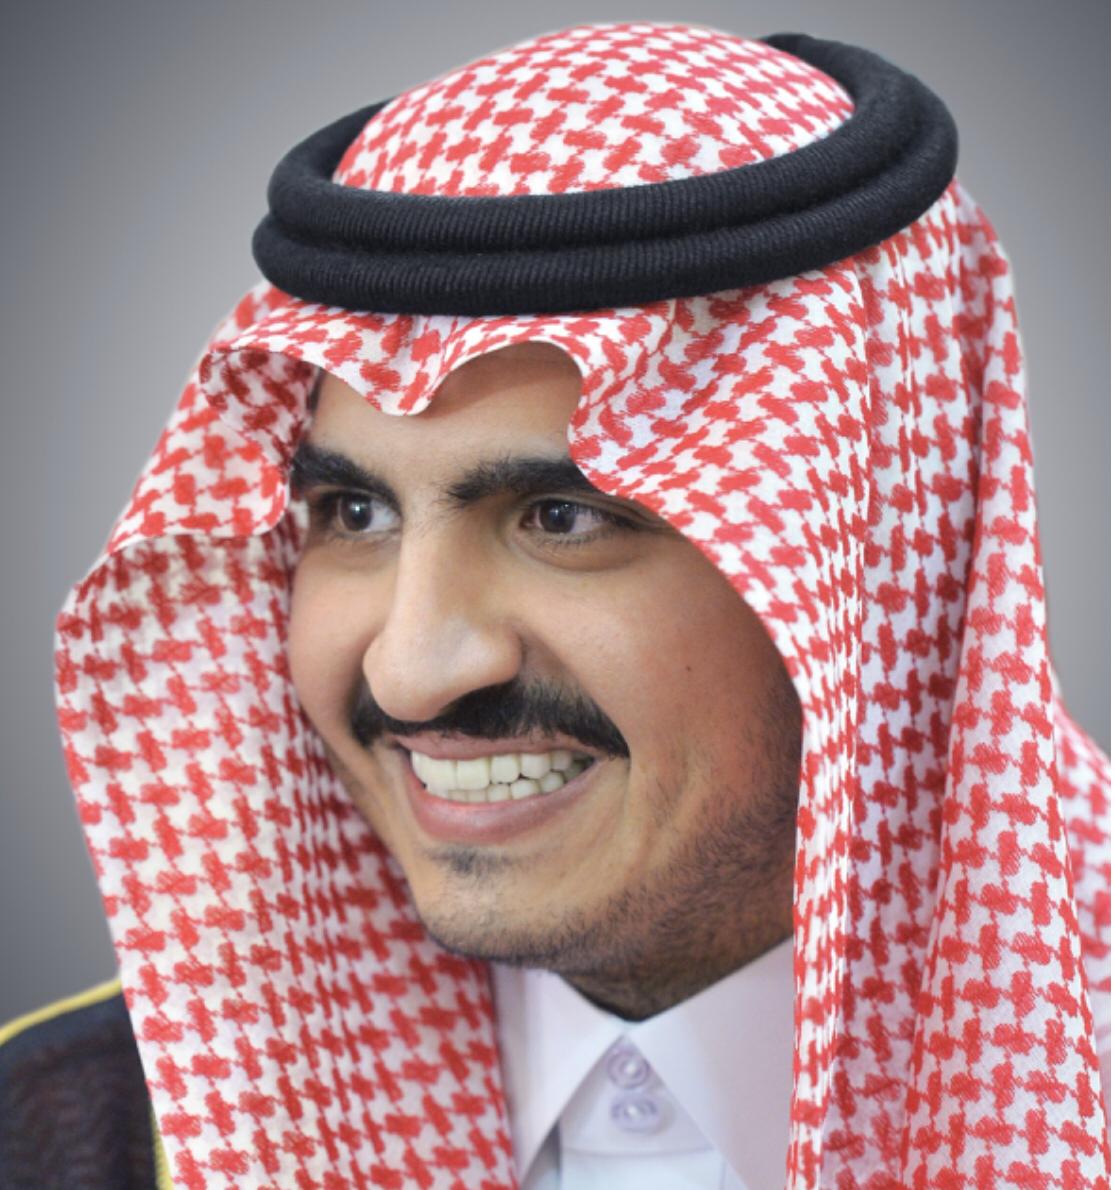 الأمير بدر بن سلطان – يكرم شباب وشابات الوطن يوم غدآ الخميس